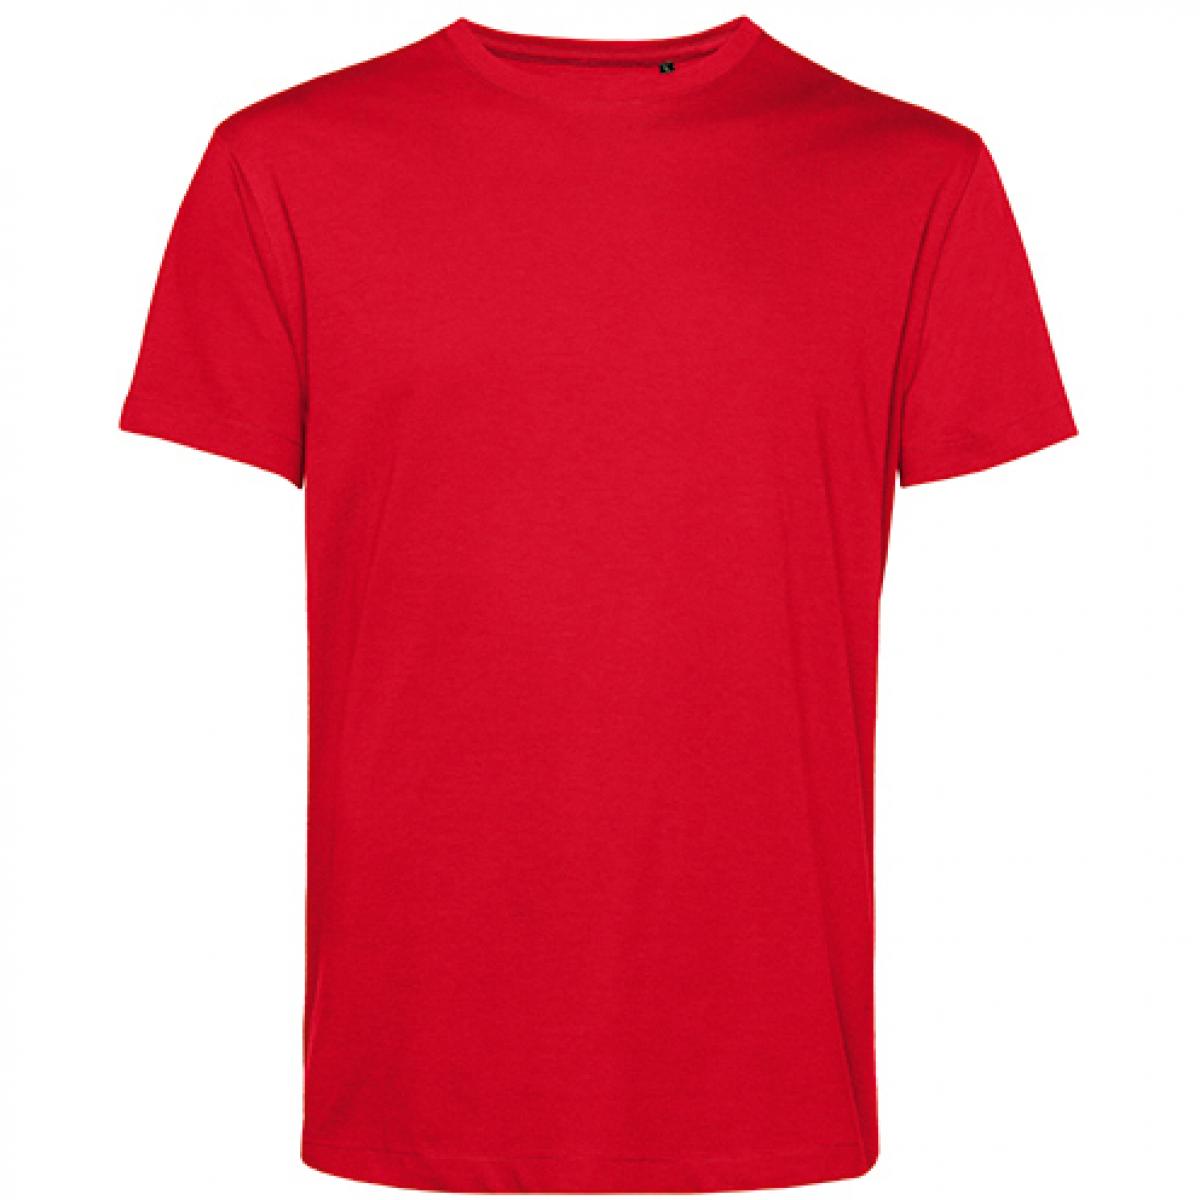 Hersteller: B&C Herstellernummer: TU01B Artikelbezeichnung: #Organic E150 T-Shirt - 100 % sanforisierte Bio-Baumwolle Farbe: Red